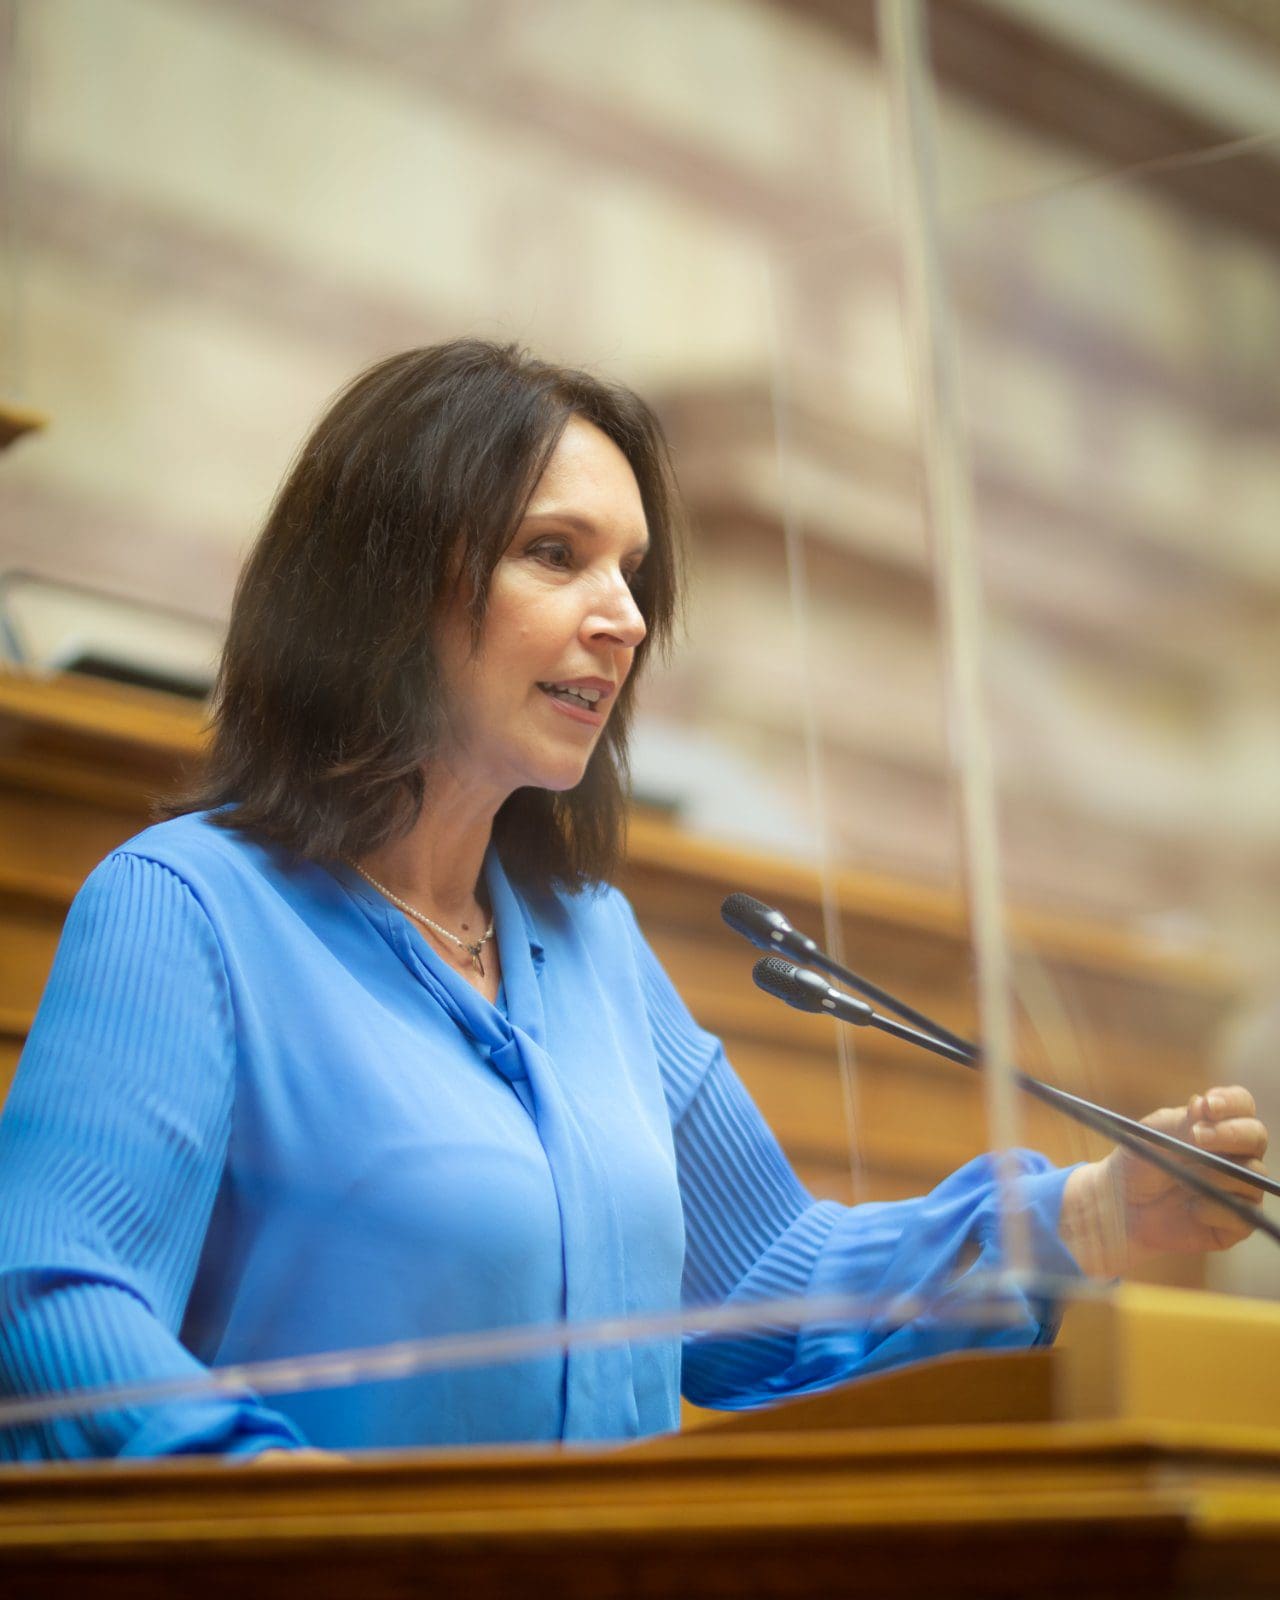 Καλλιόπη Βέττα - Ομιλία στην Βουλή: H δημοκρατική εκτροπή που προκάλεσε η κυβέρνηση με τις παρακολουθήσεις θα πάρει την πρέπουσα απάντηση από τους πολίτες